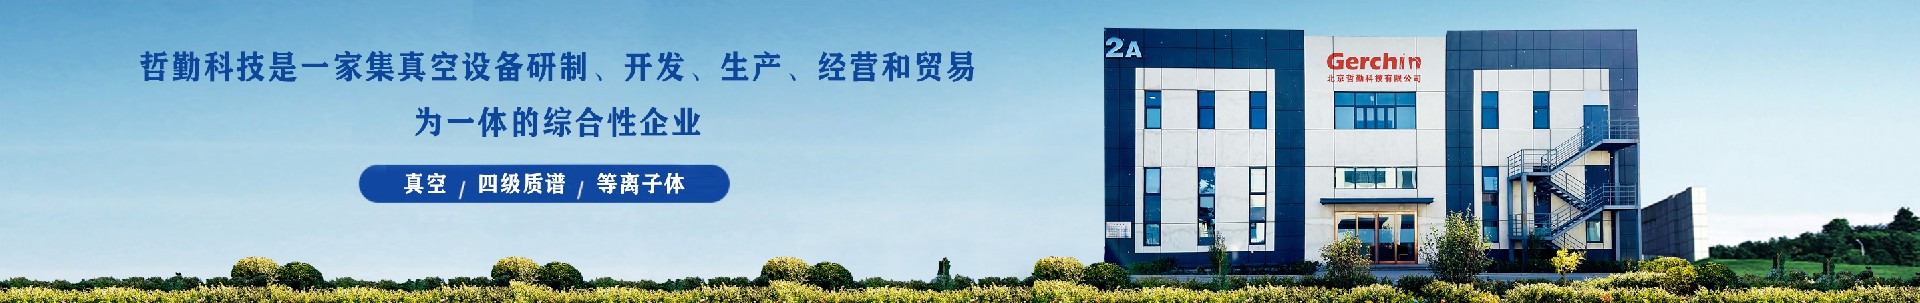 公司简介-龙8唯一官网科技有限公司